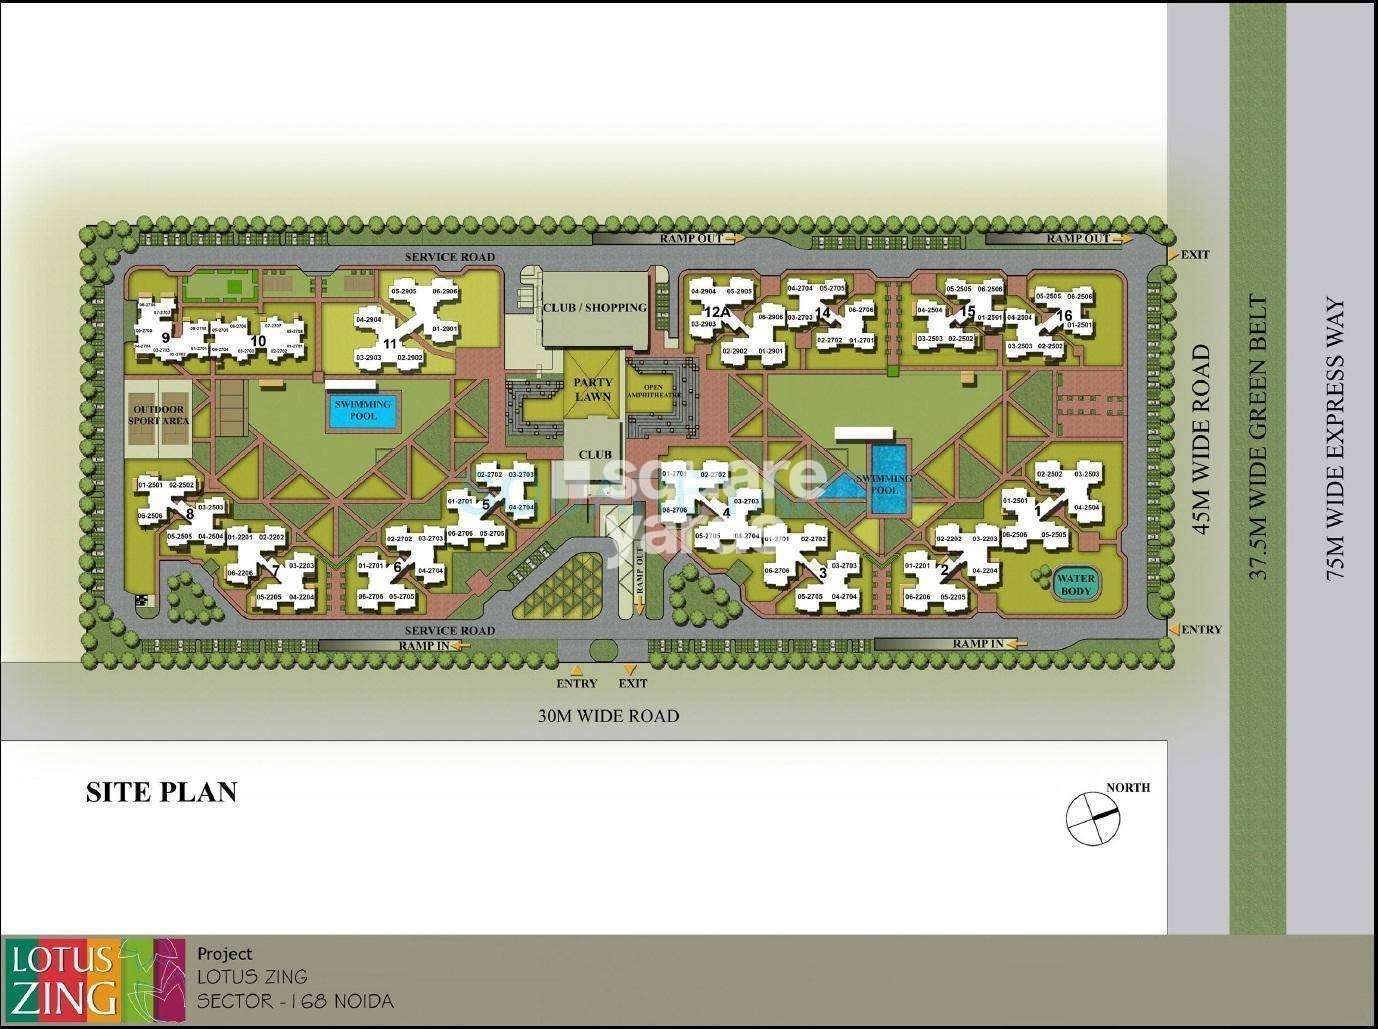 3c lotus zing project master plan image1